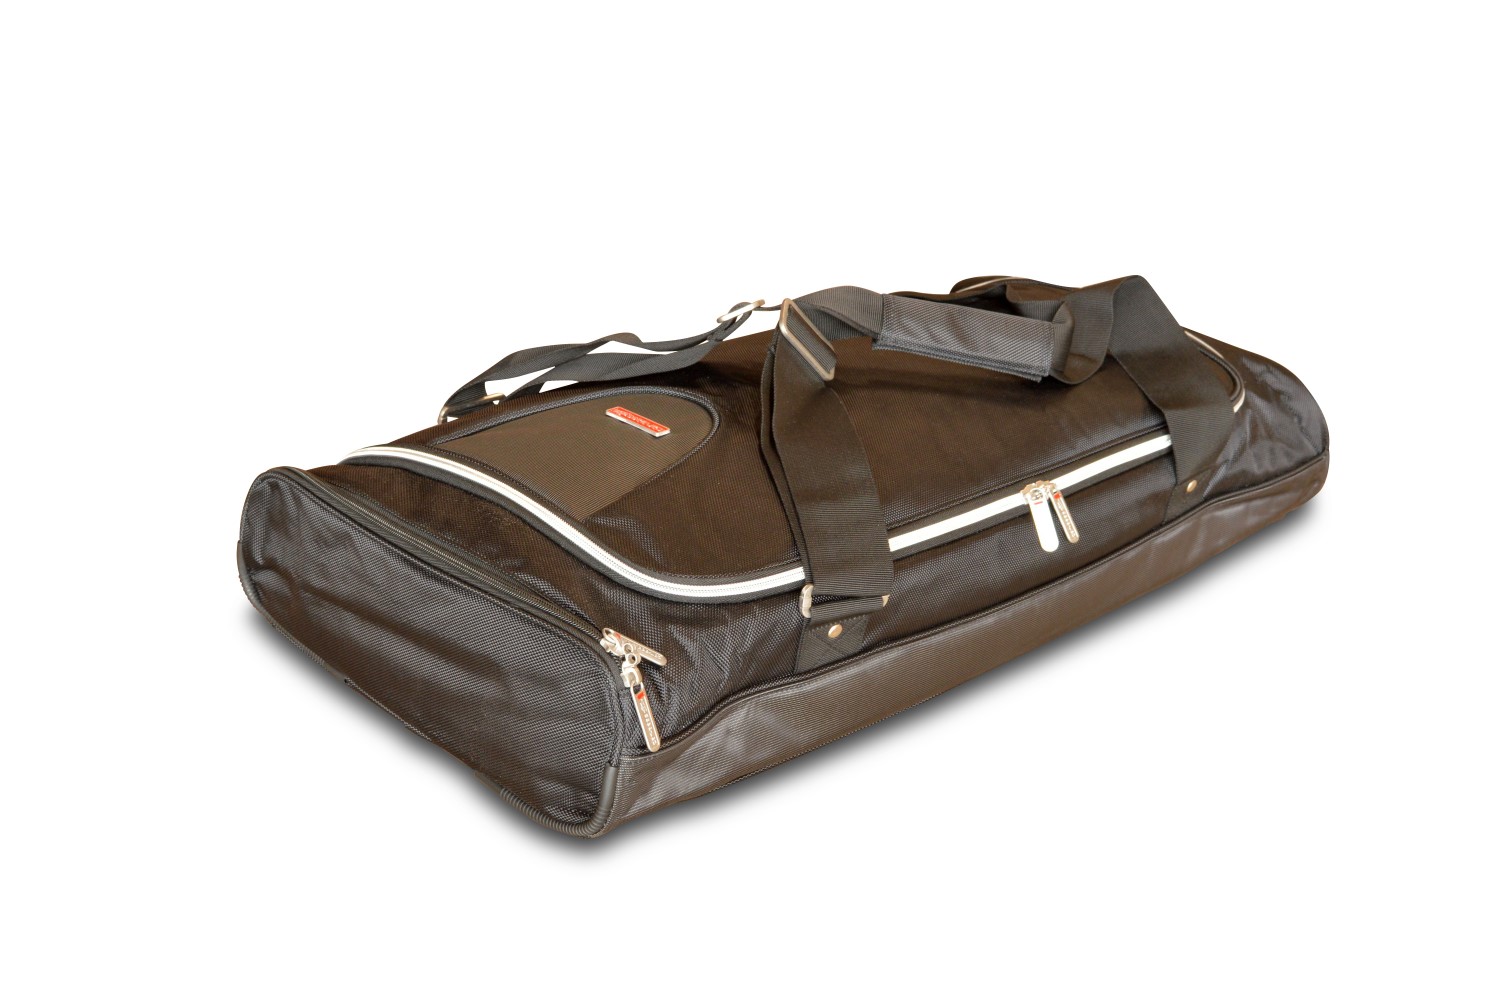 Travel bag - 37x12x70 (WxHxL)